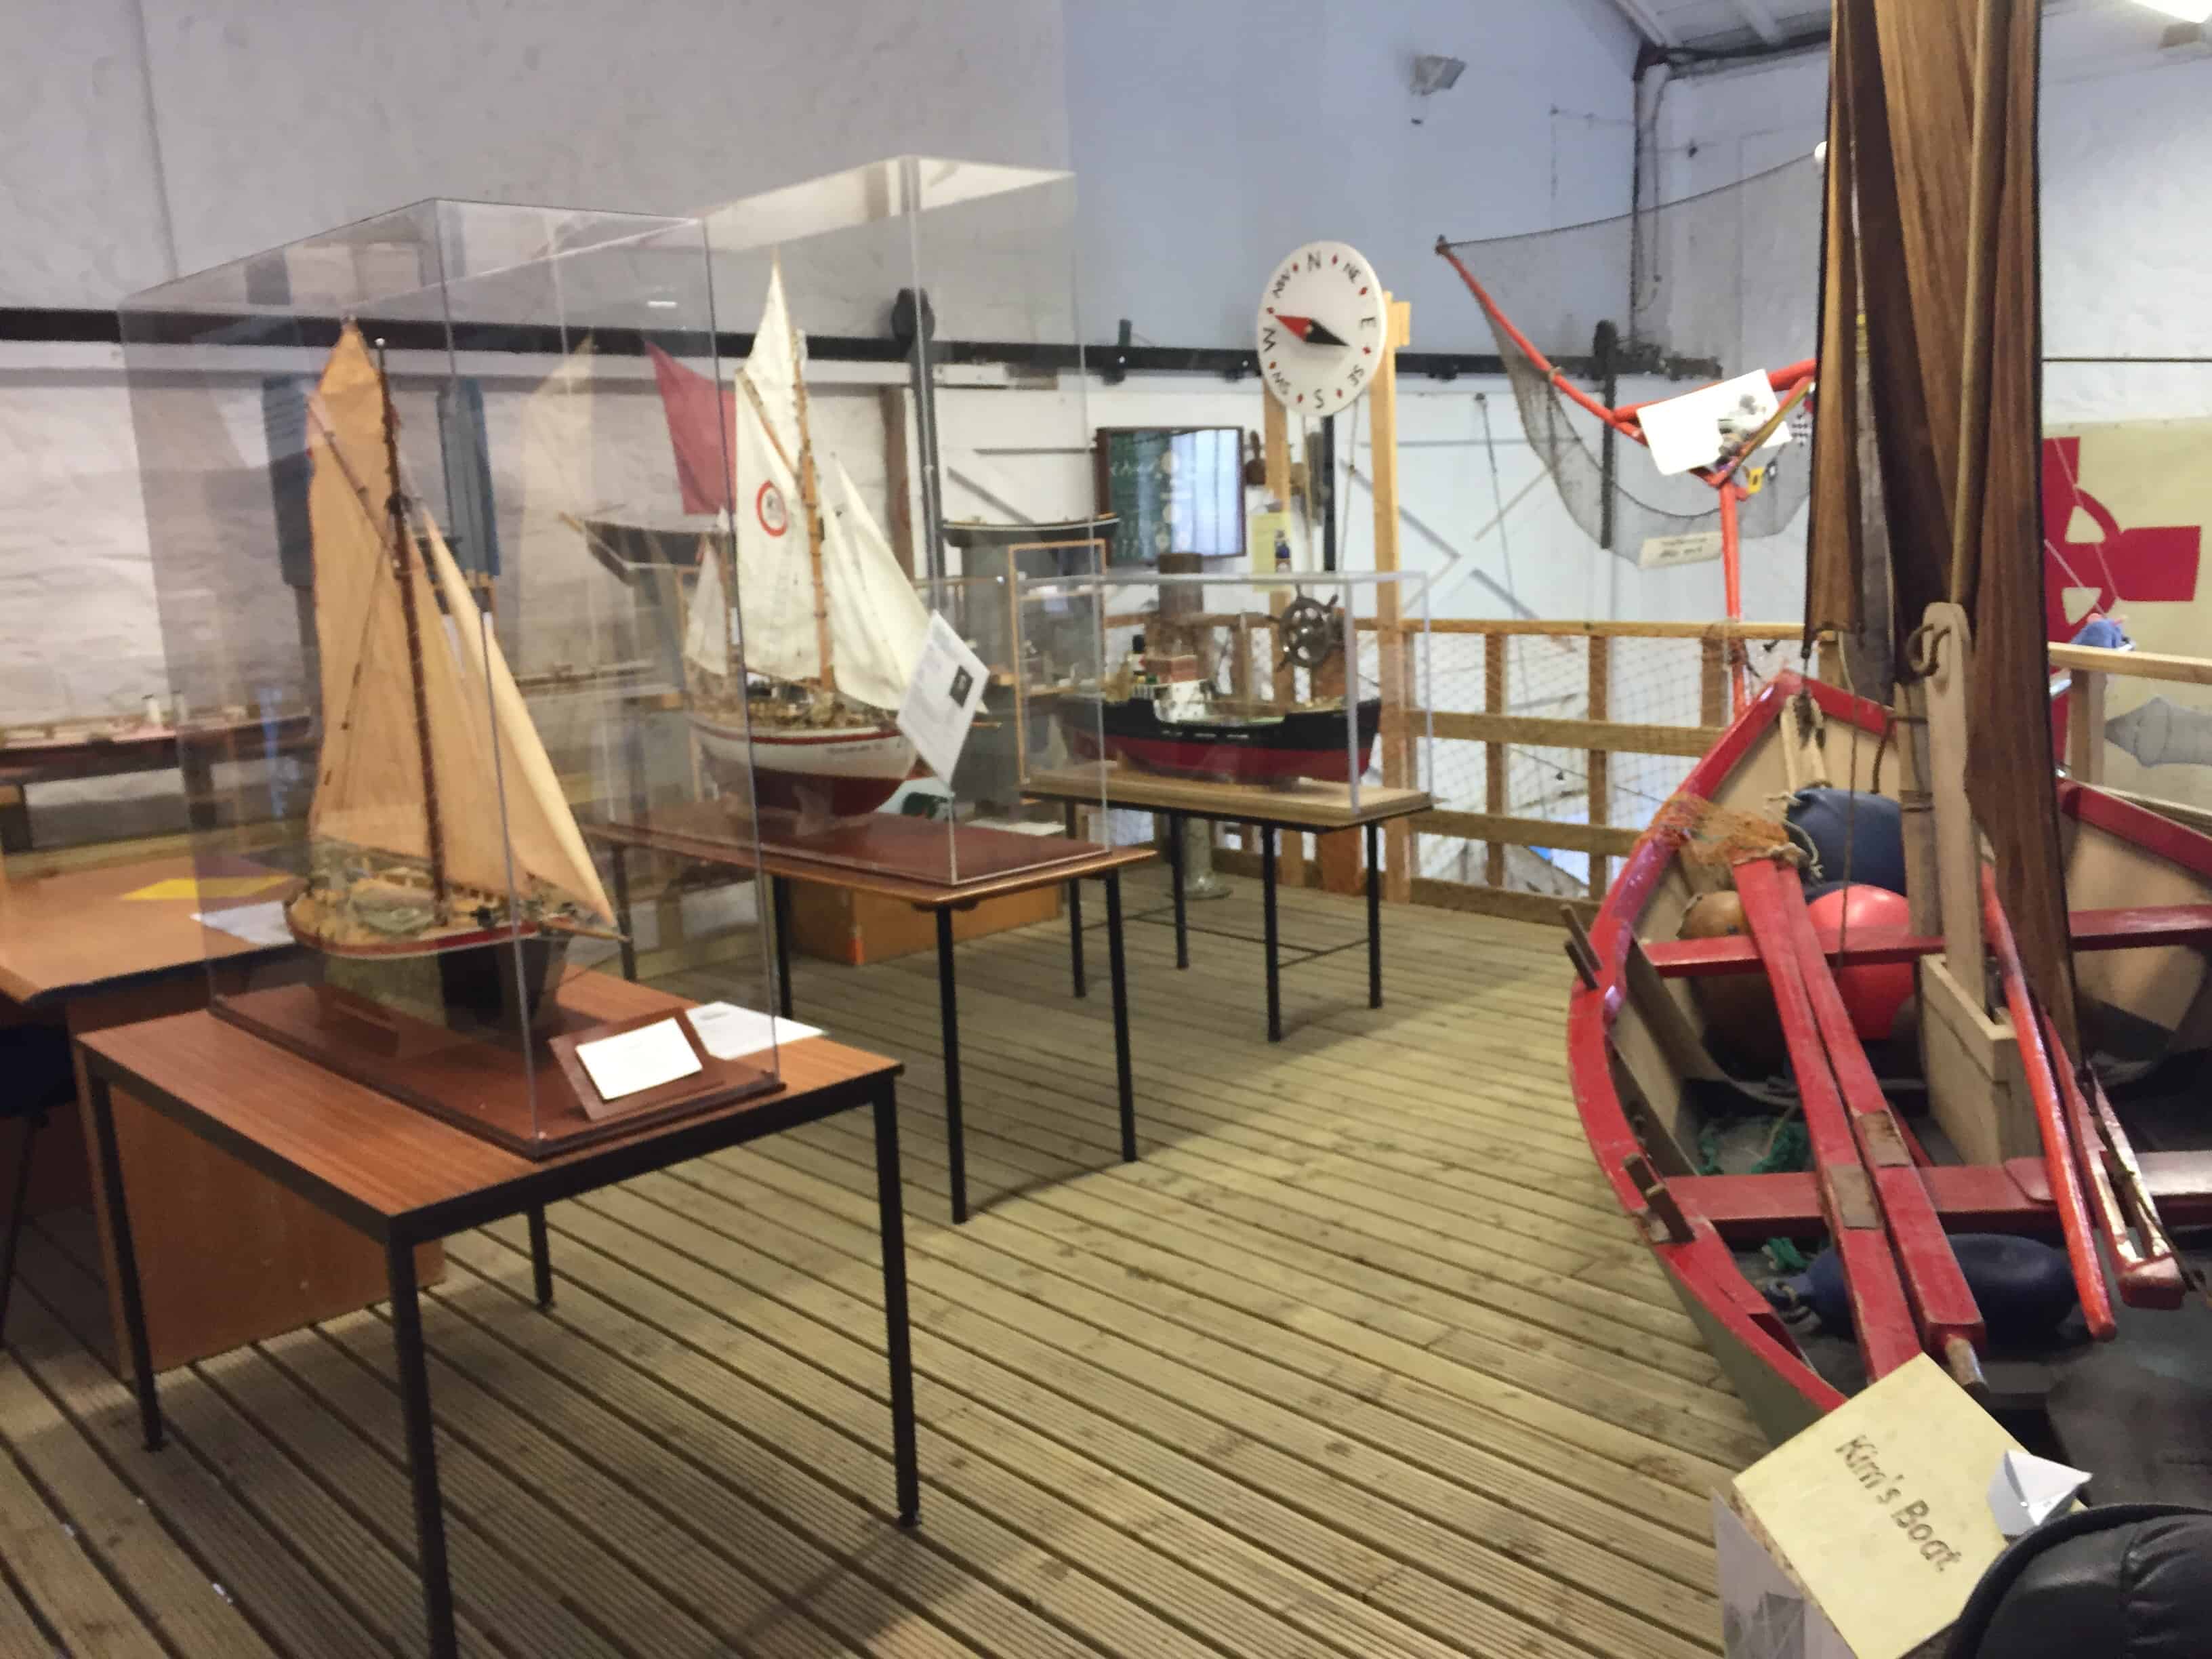 Watchet boat museum 